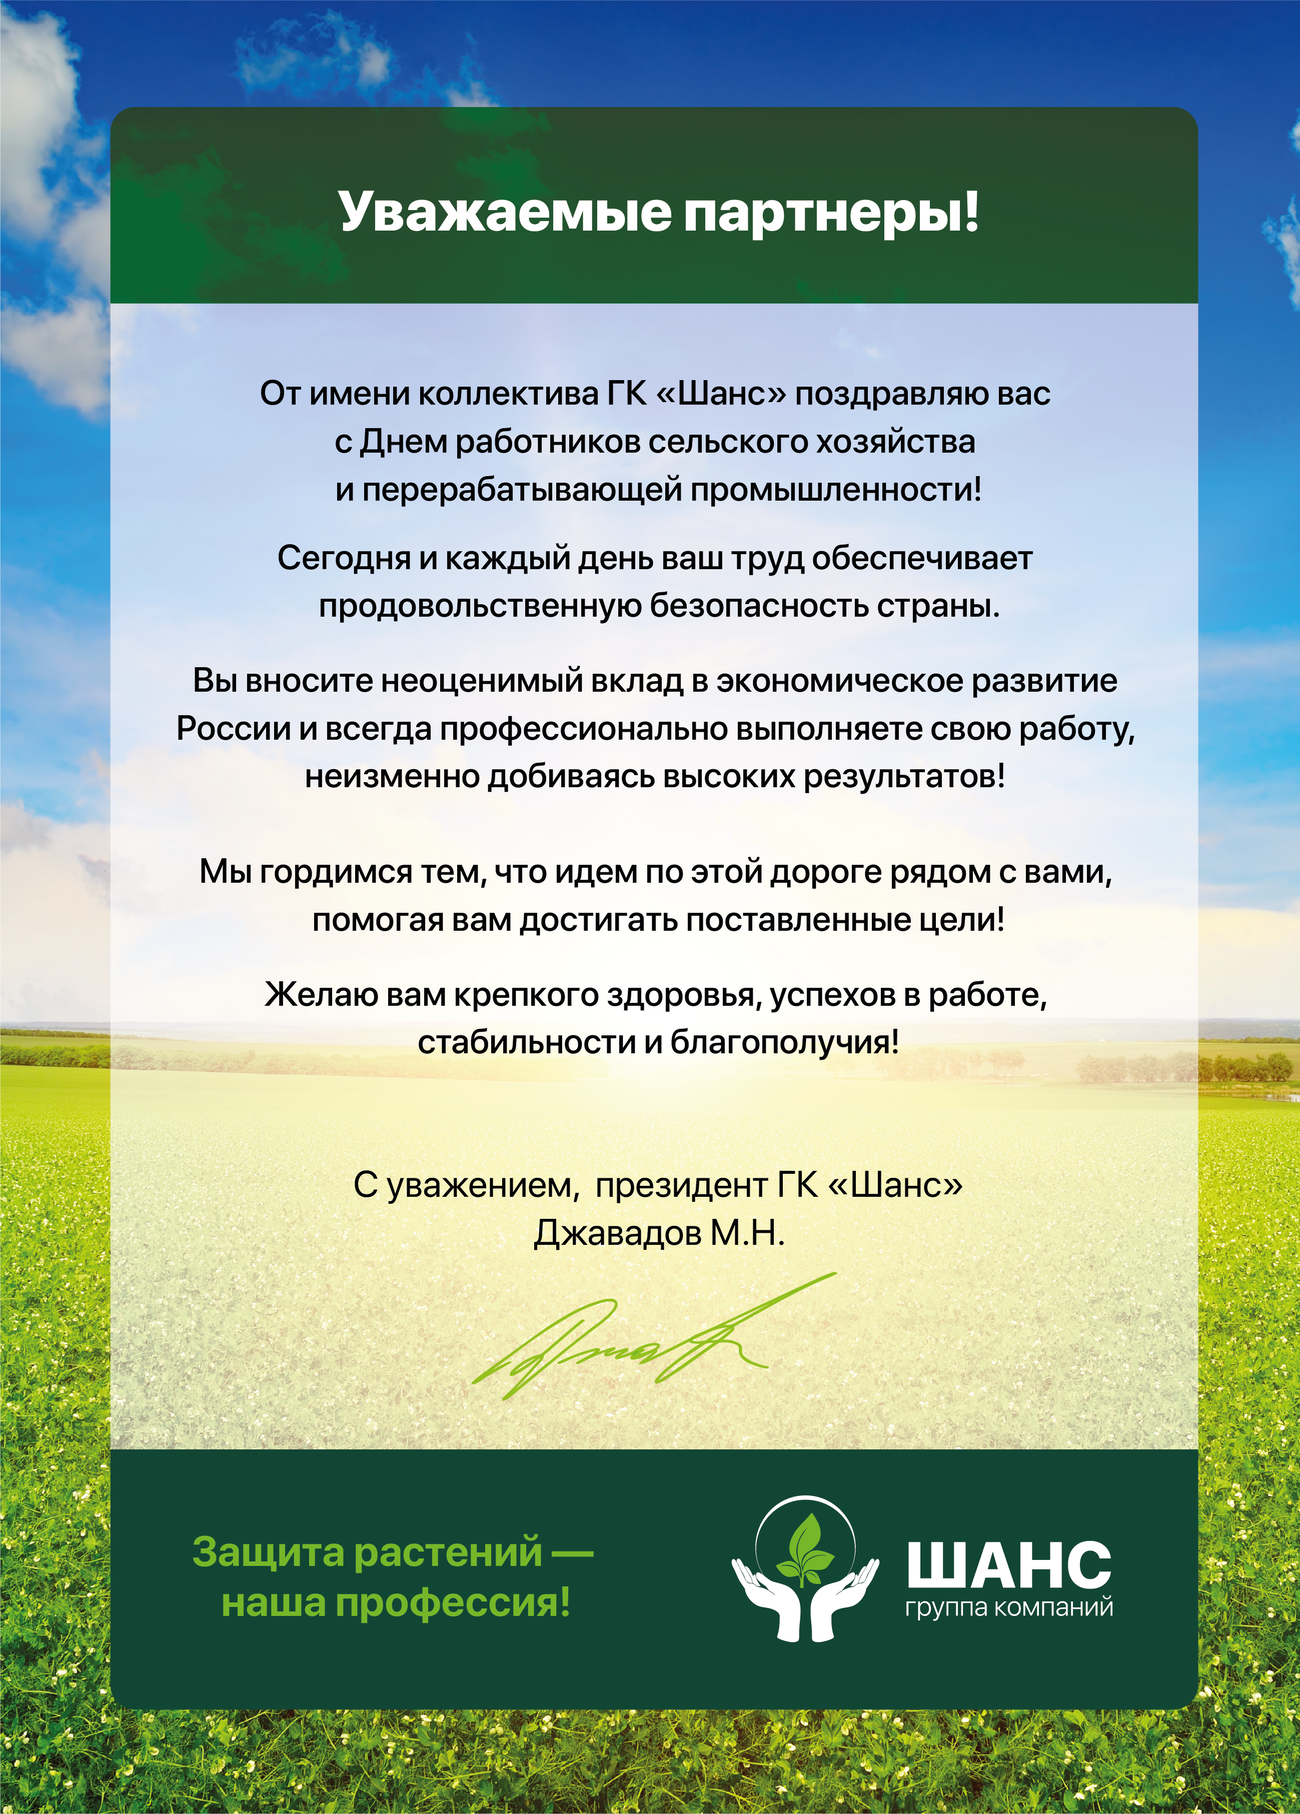 В России отмечается День работника сельского хозяйства и перерабатывающей промышленности